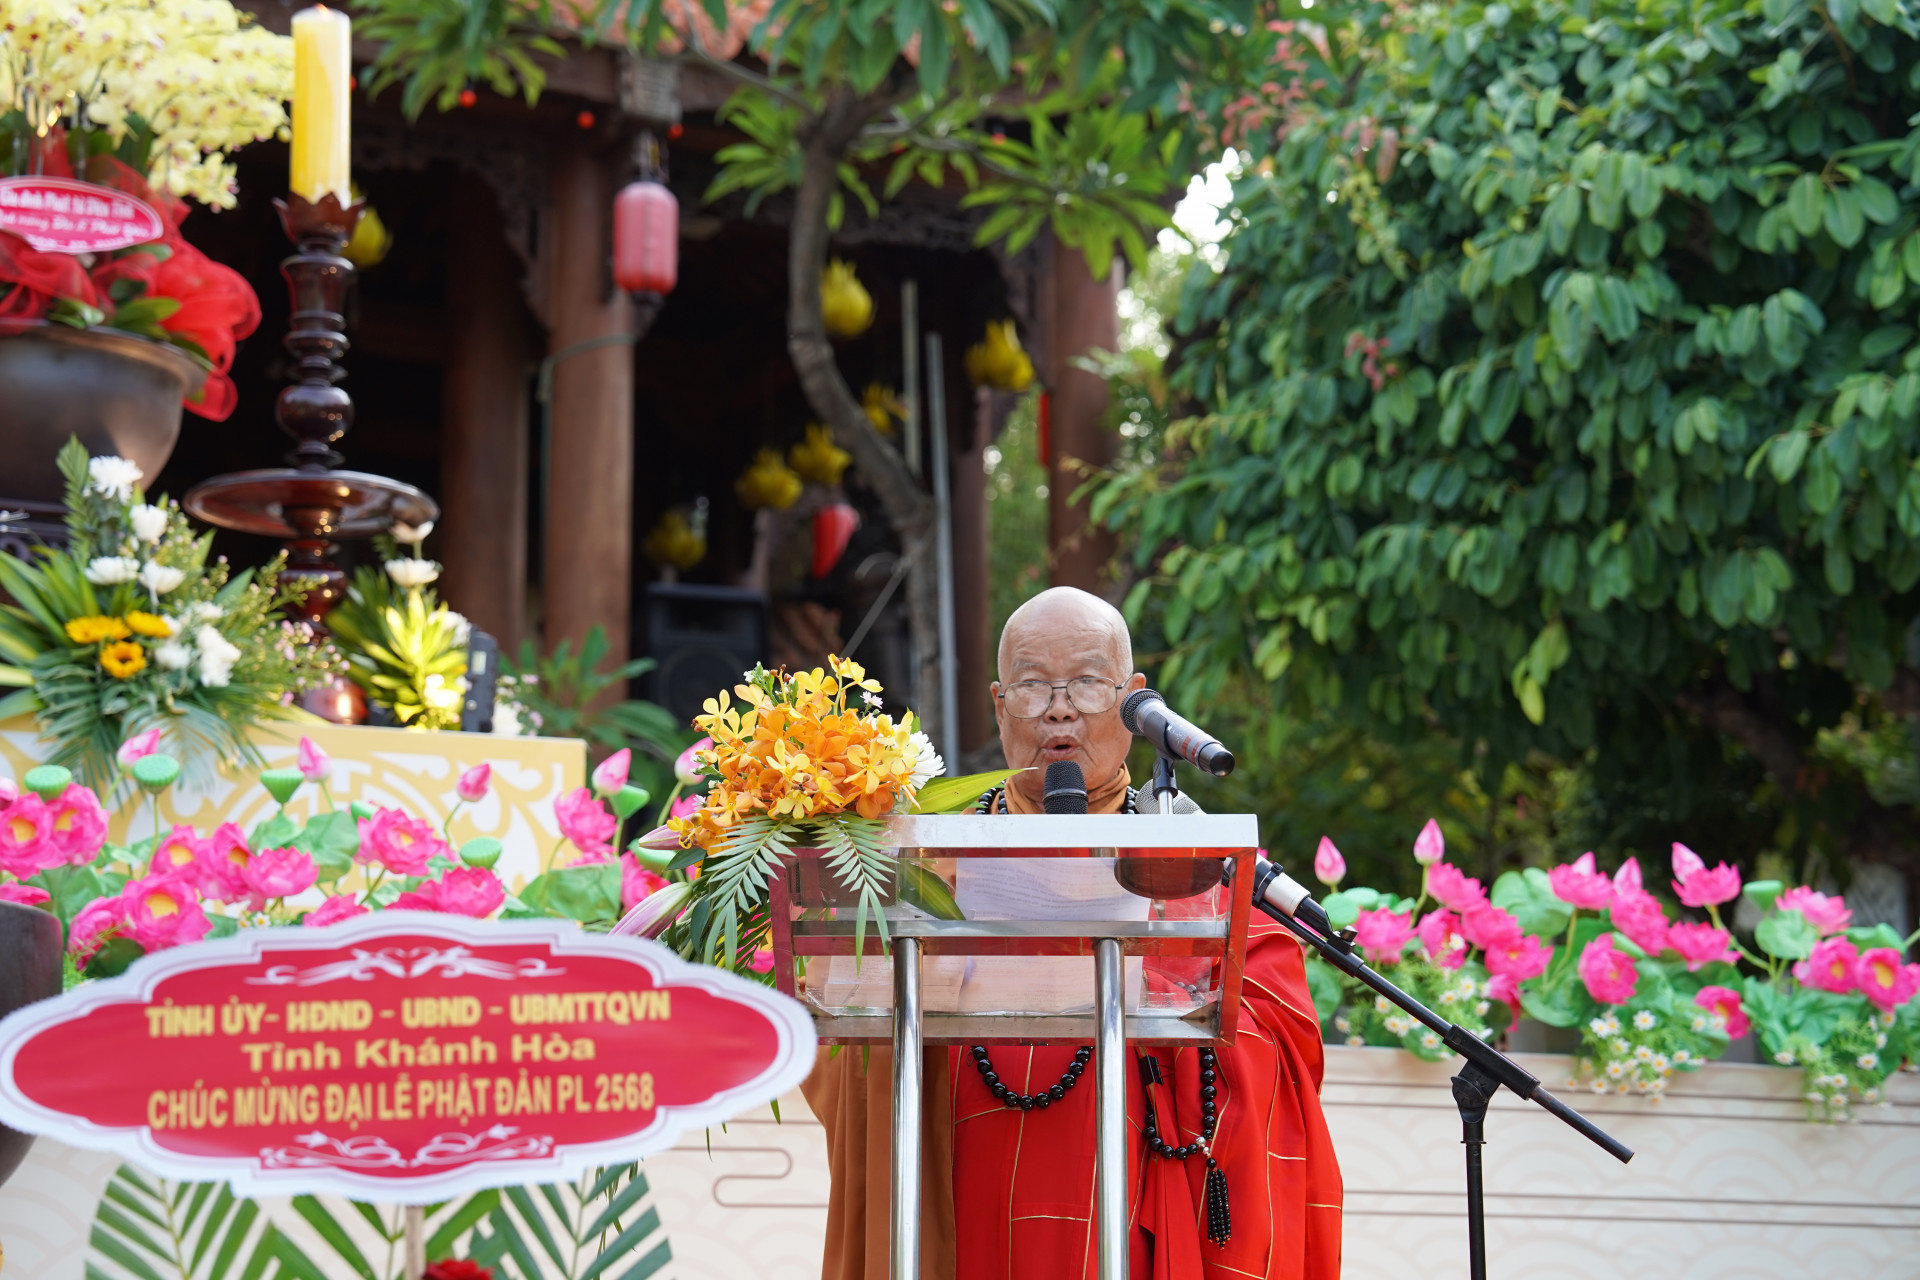 Đọc thông điệp Đại lễ Phật đản Phật lịch 2568 của Đức pháp chủ Giáo hội Phật giáo Việt Nam.